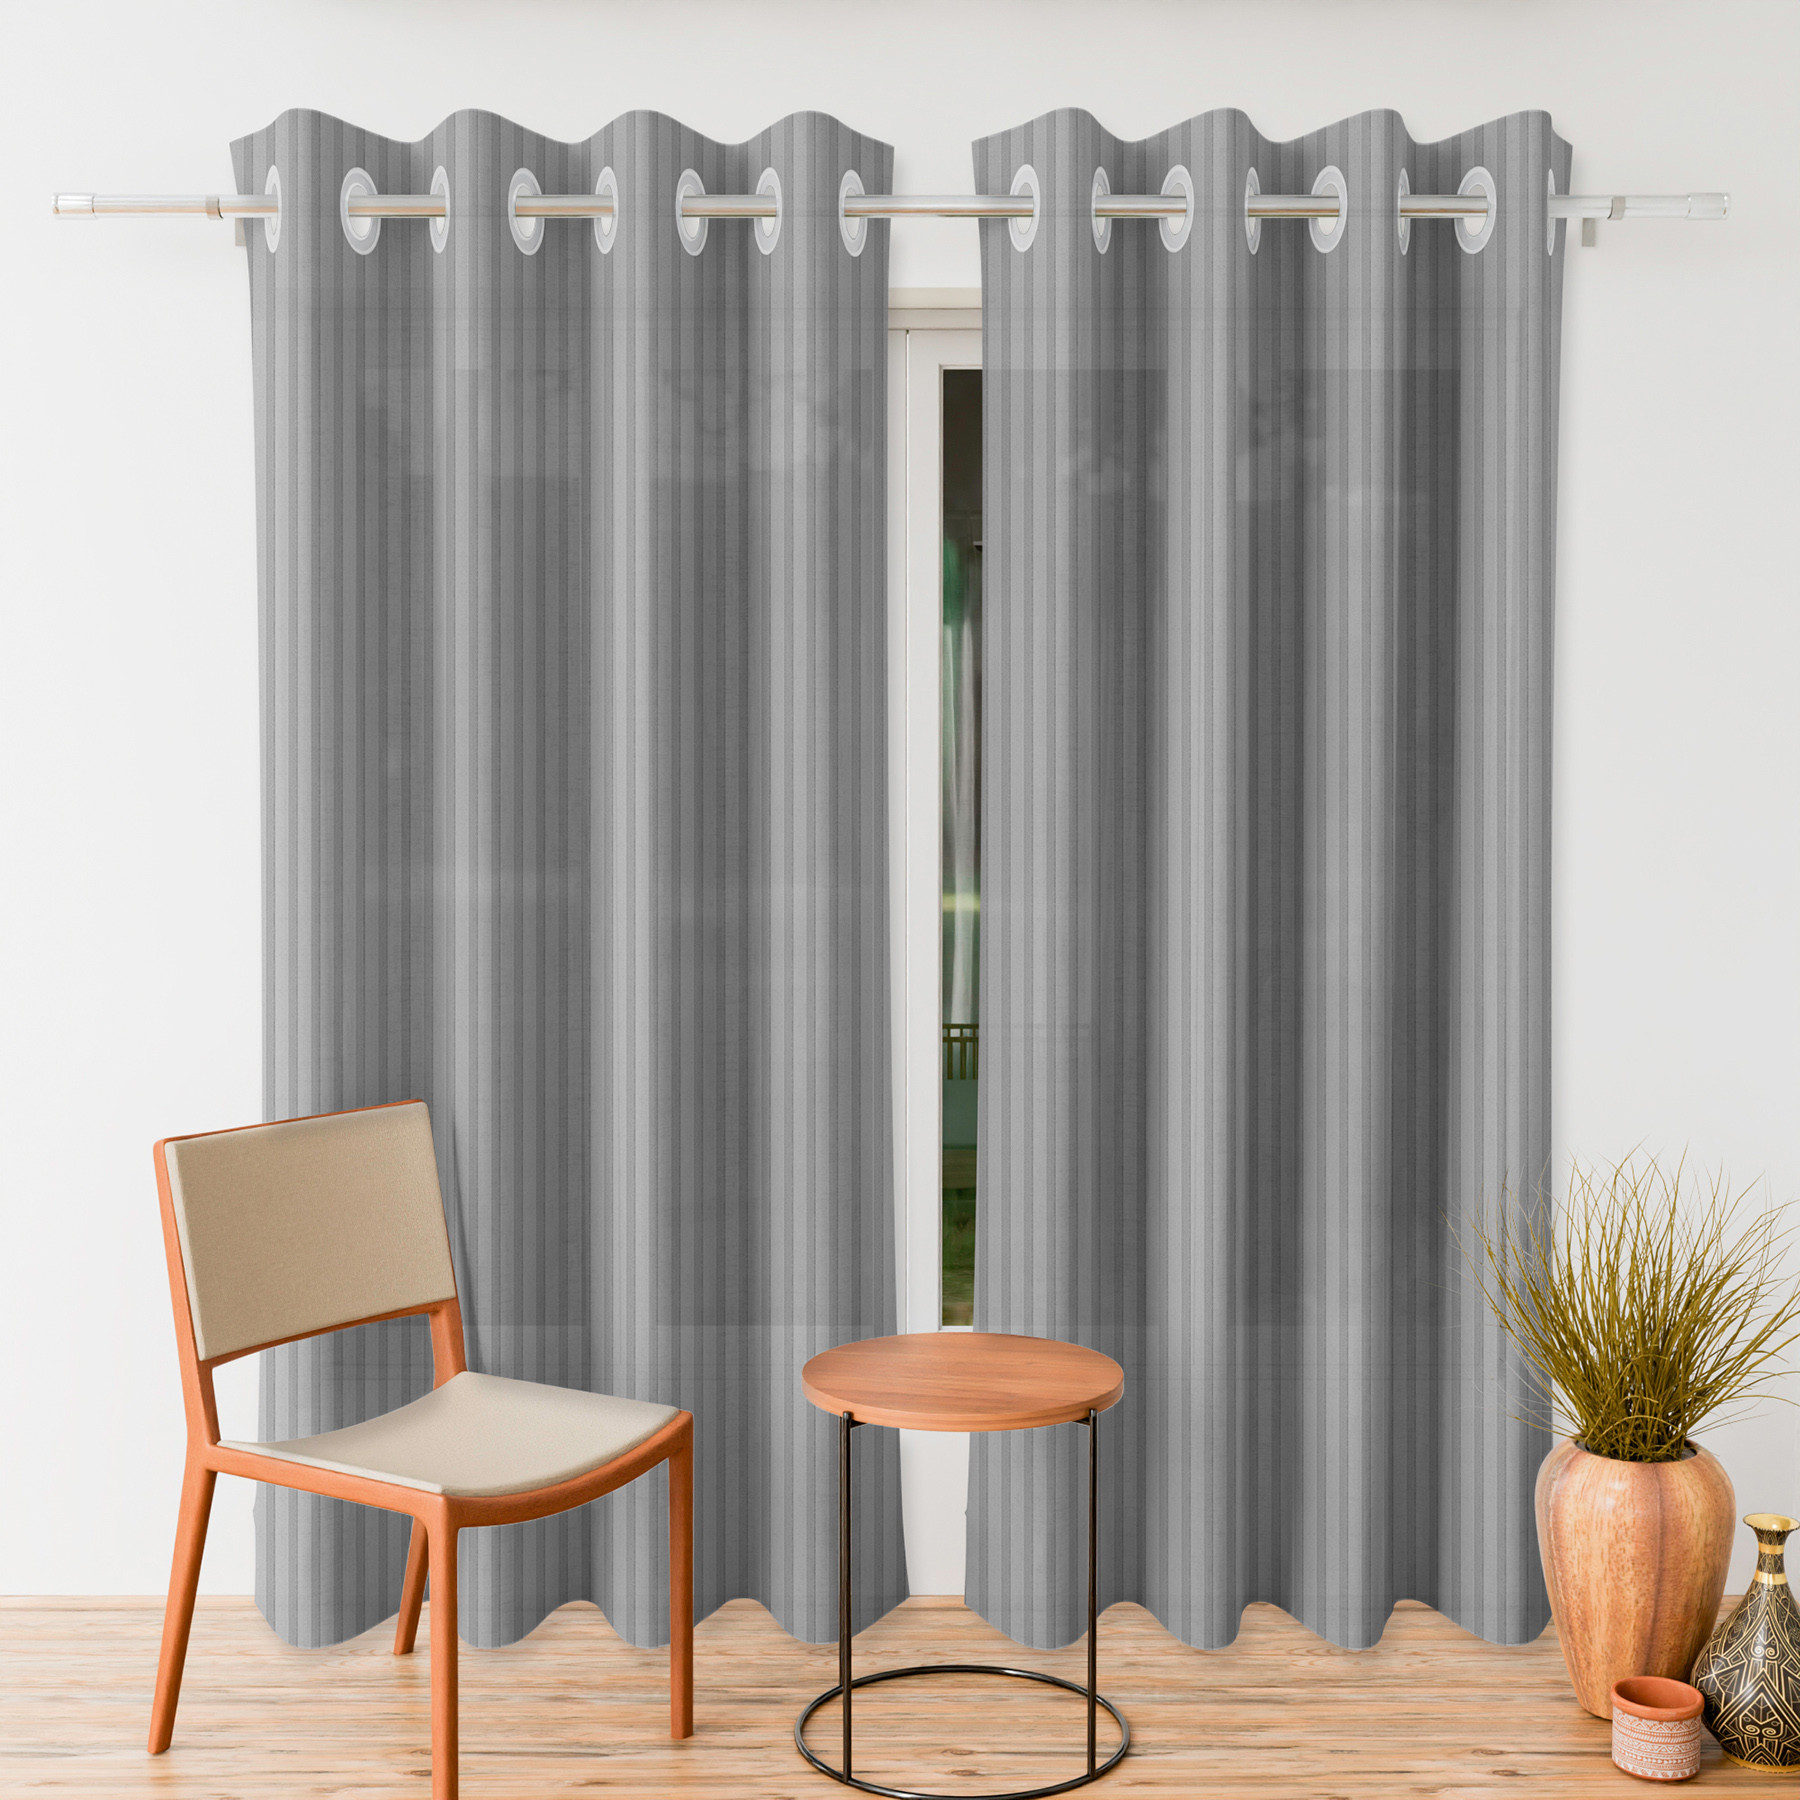 Kuber Industries Door Curtain | Sheer Door Curtains | Parda for Living Room | Bedroom Balcony Parda | Door Curtain Parda for Home Décor | Lining Net | 7 Feet | Gray